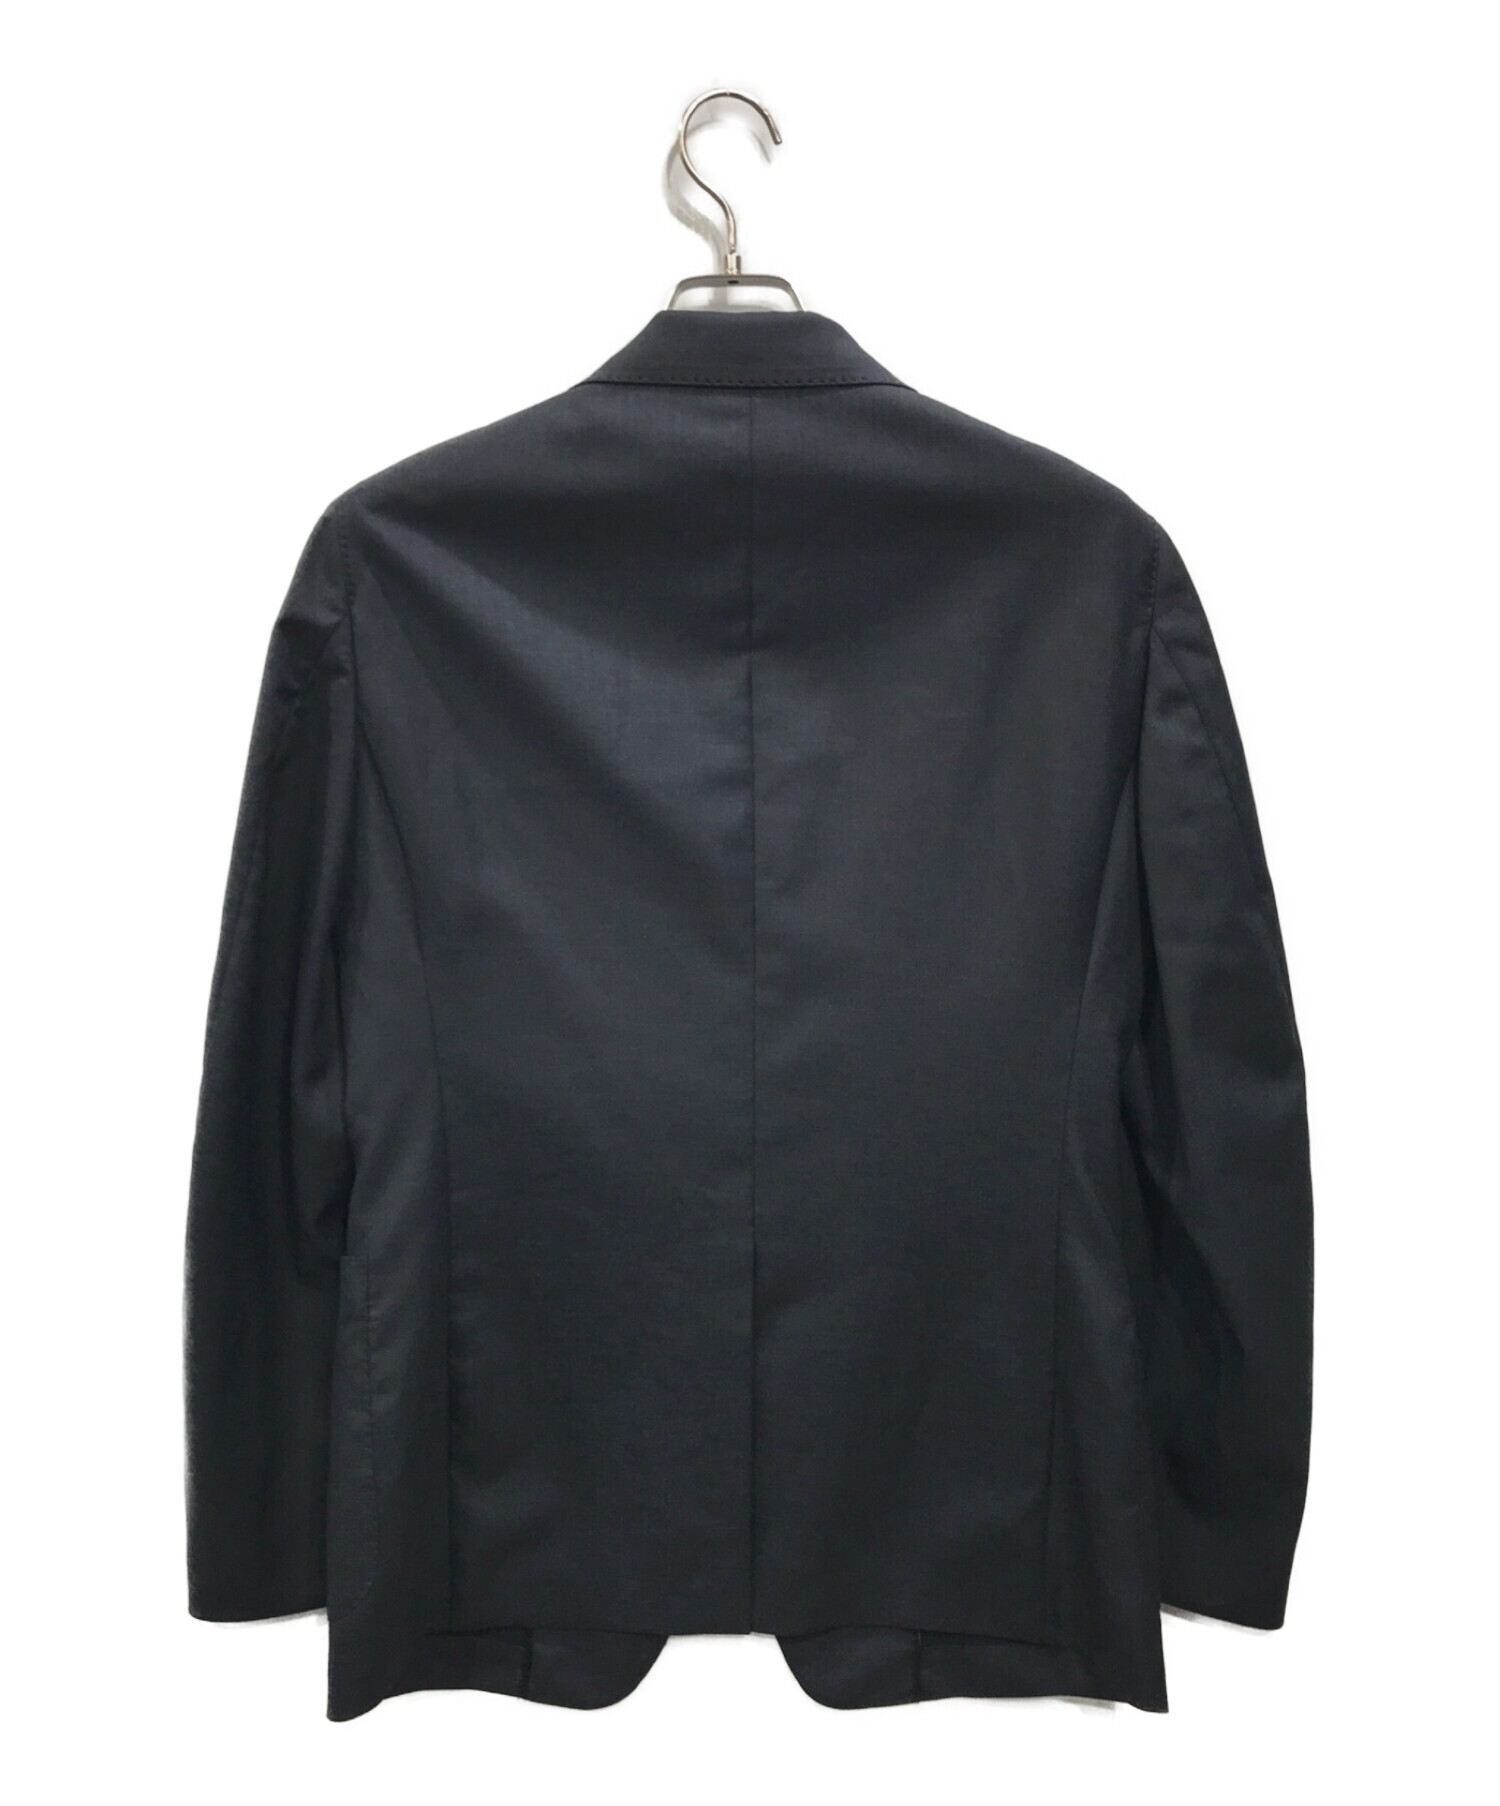 エストネーション／ESTNATION テーラードジャケット ブレザー JKT アウター メンズ 男性 男性用レザー 革 本革 ブラック 黒  2つボタン シングルブレスト